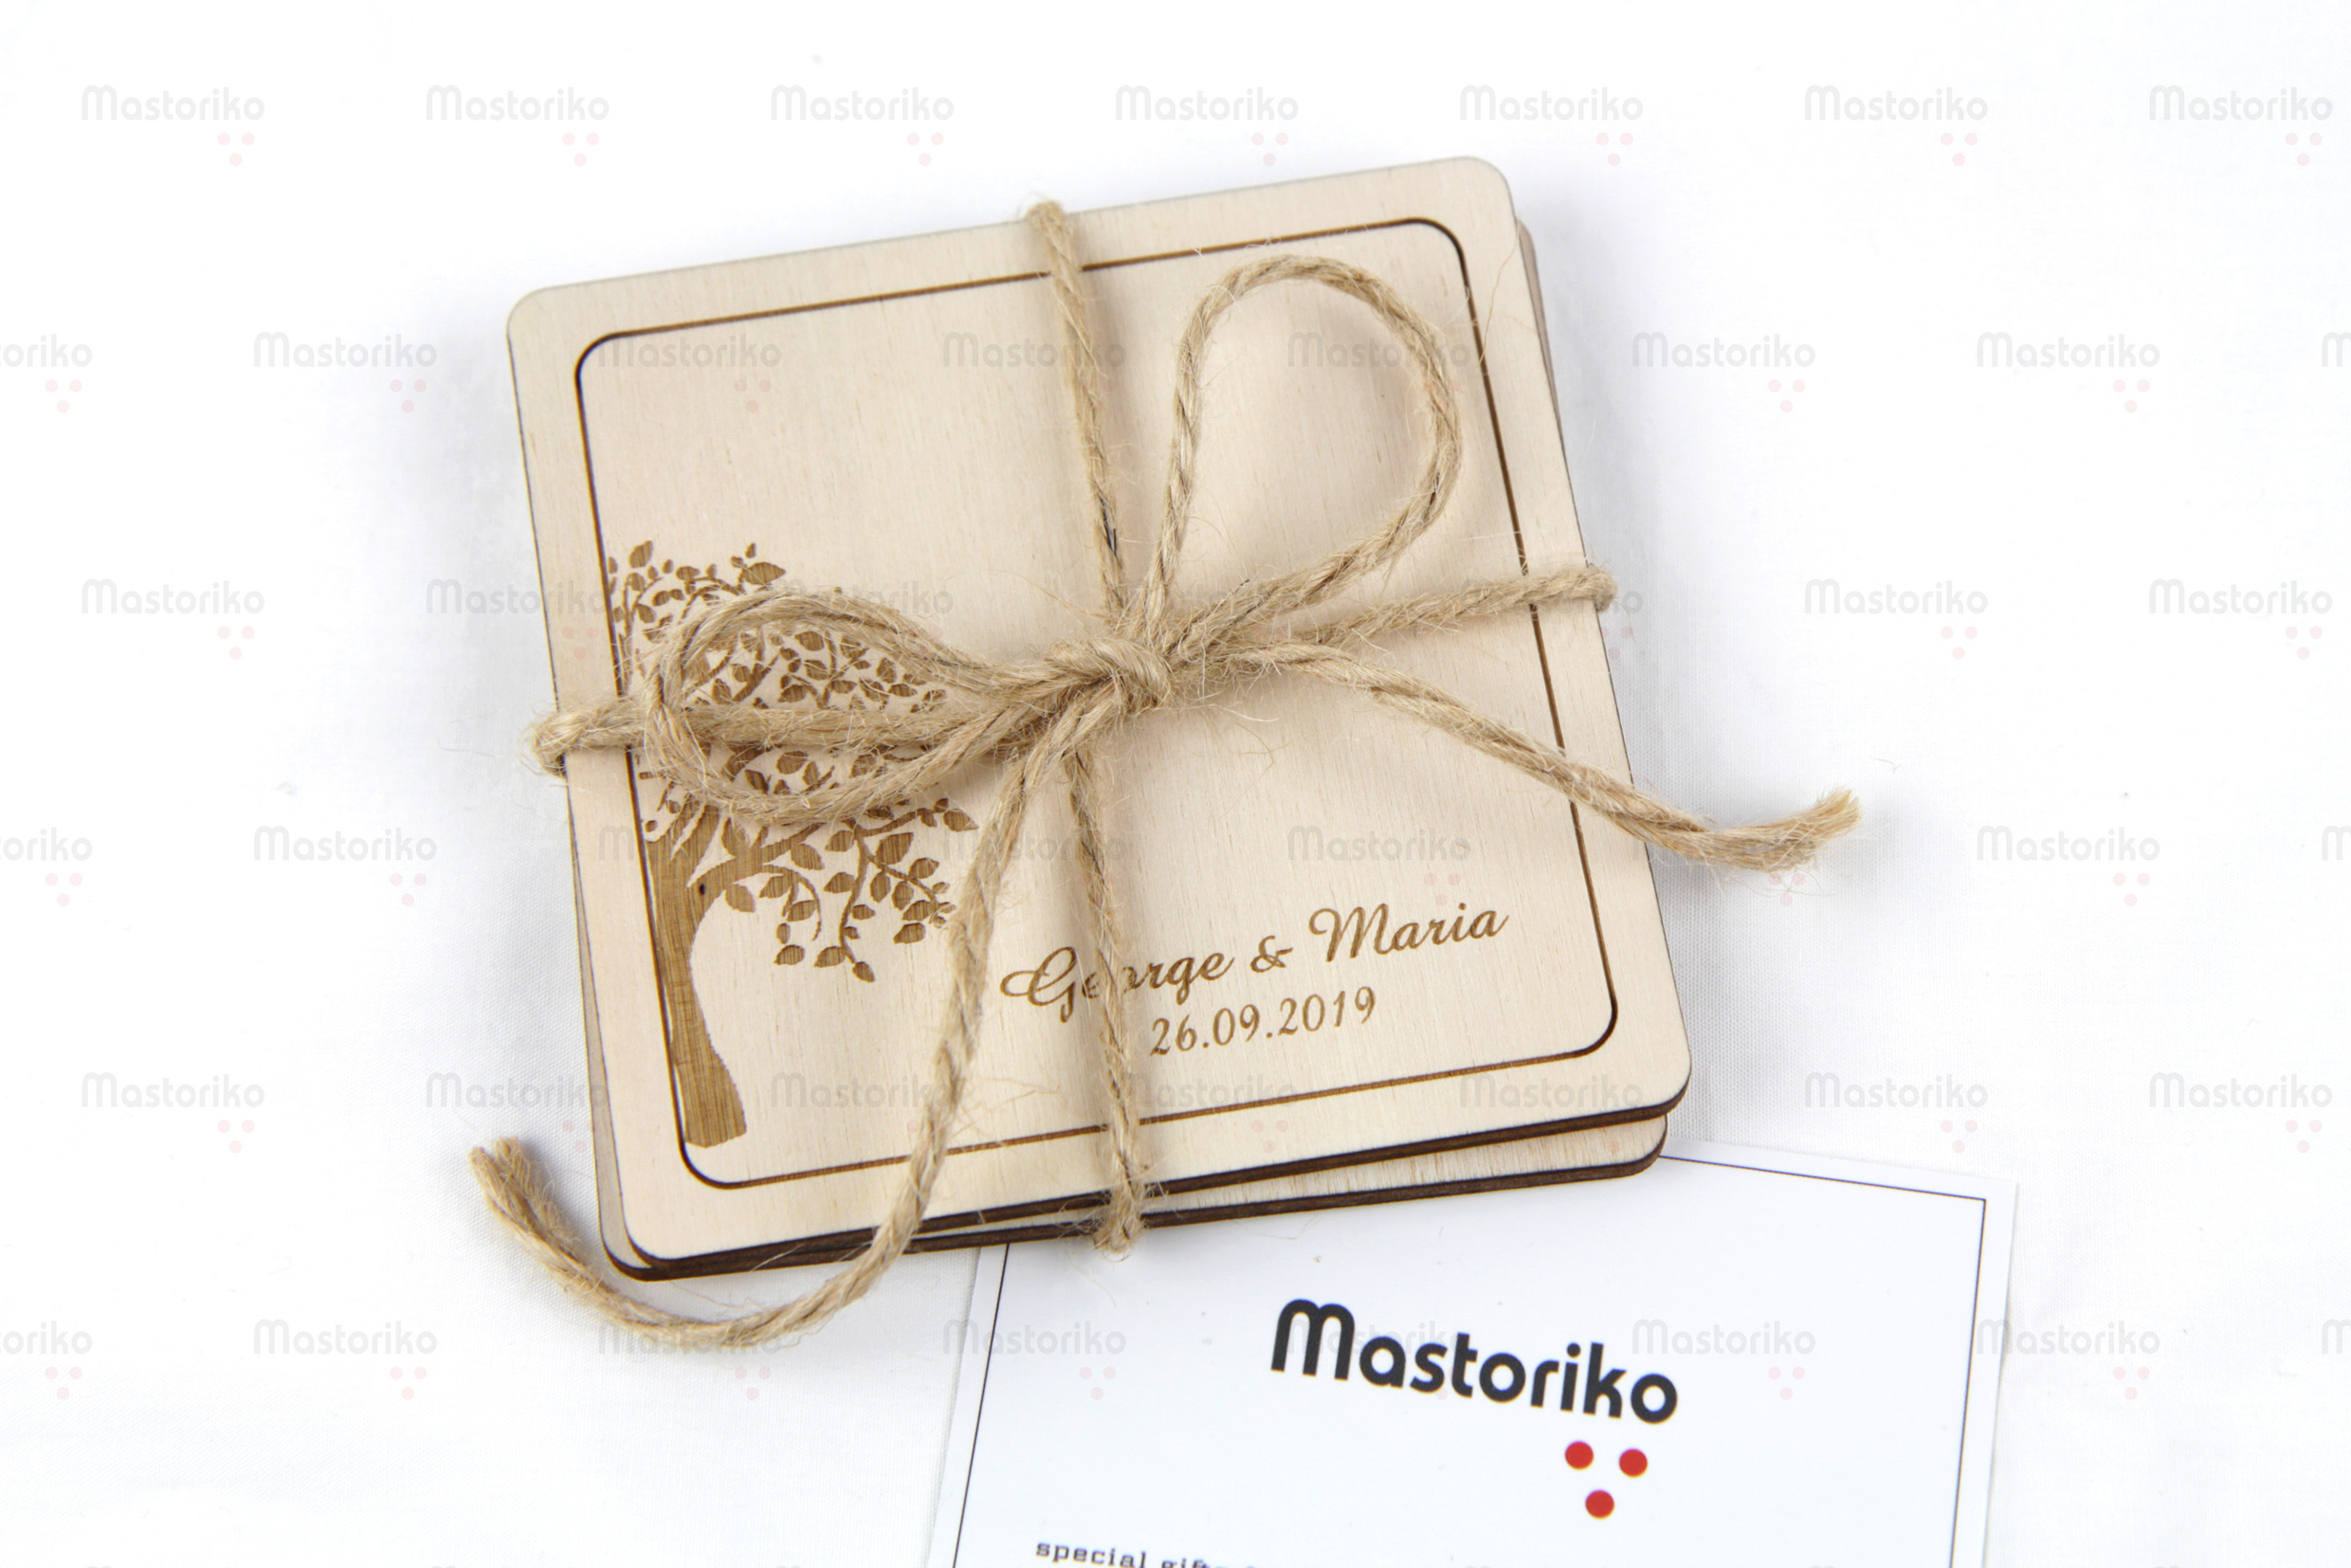 Τετράγωνα σουβέρ για γάμο - Δέντρο ευτυχίας 9.5cm - Δώρα για γάμο - Μπομπονιέρα γάμου - Κύπρος - Μαστορικό - S.M. Mastoriko